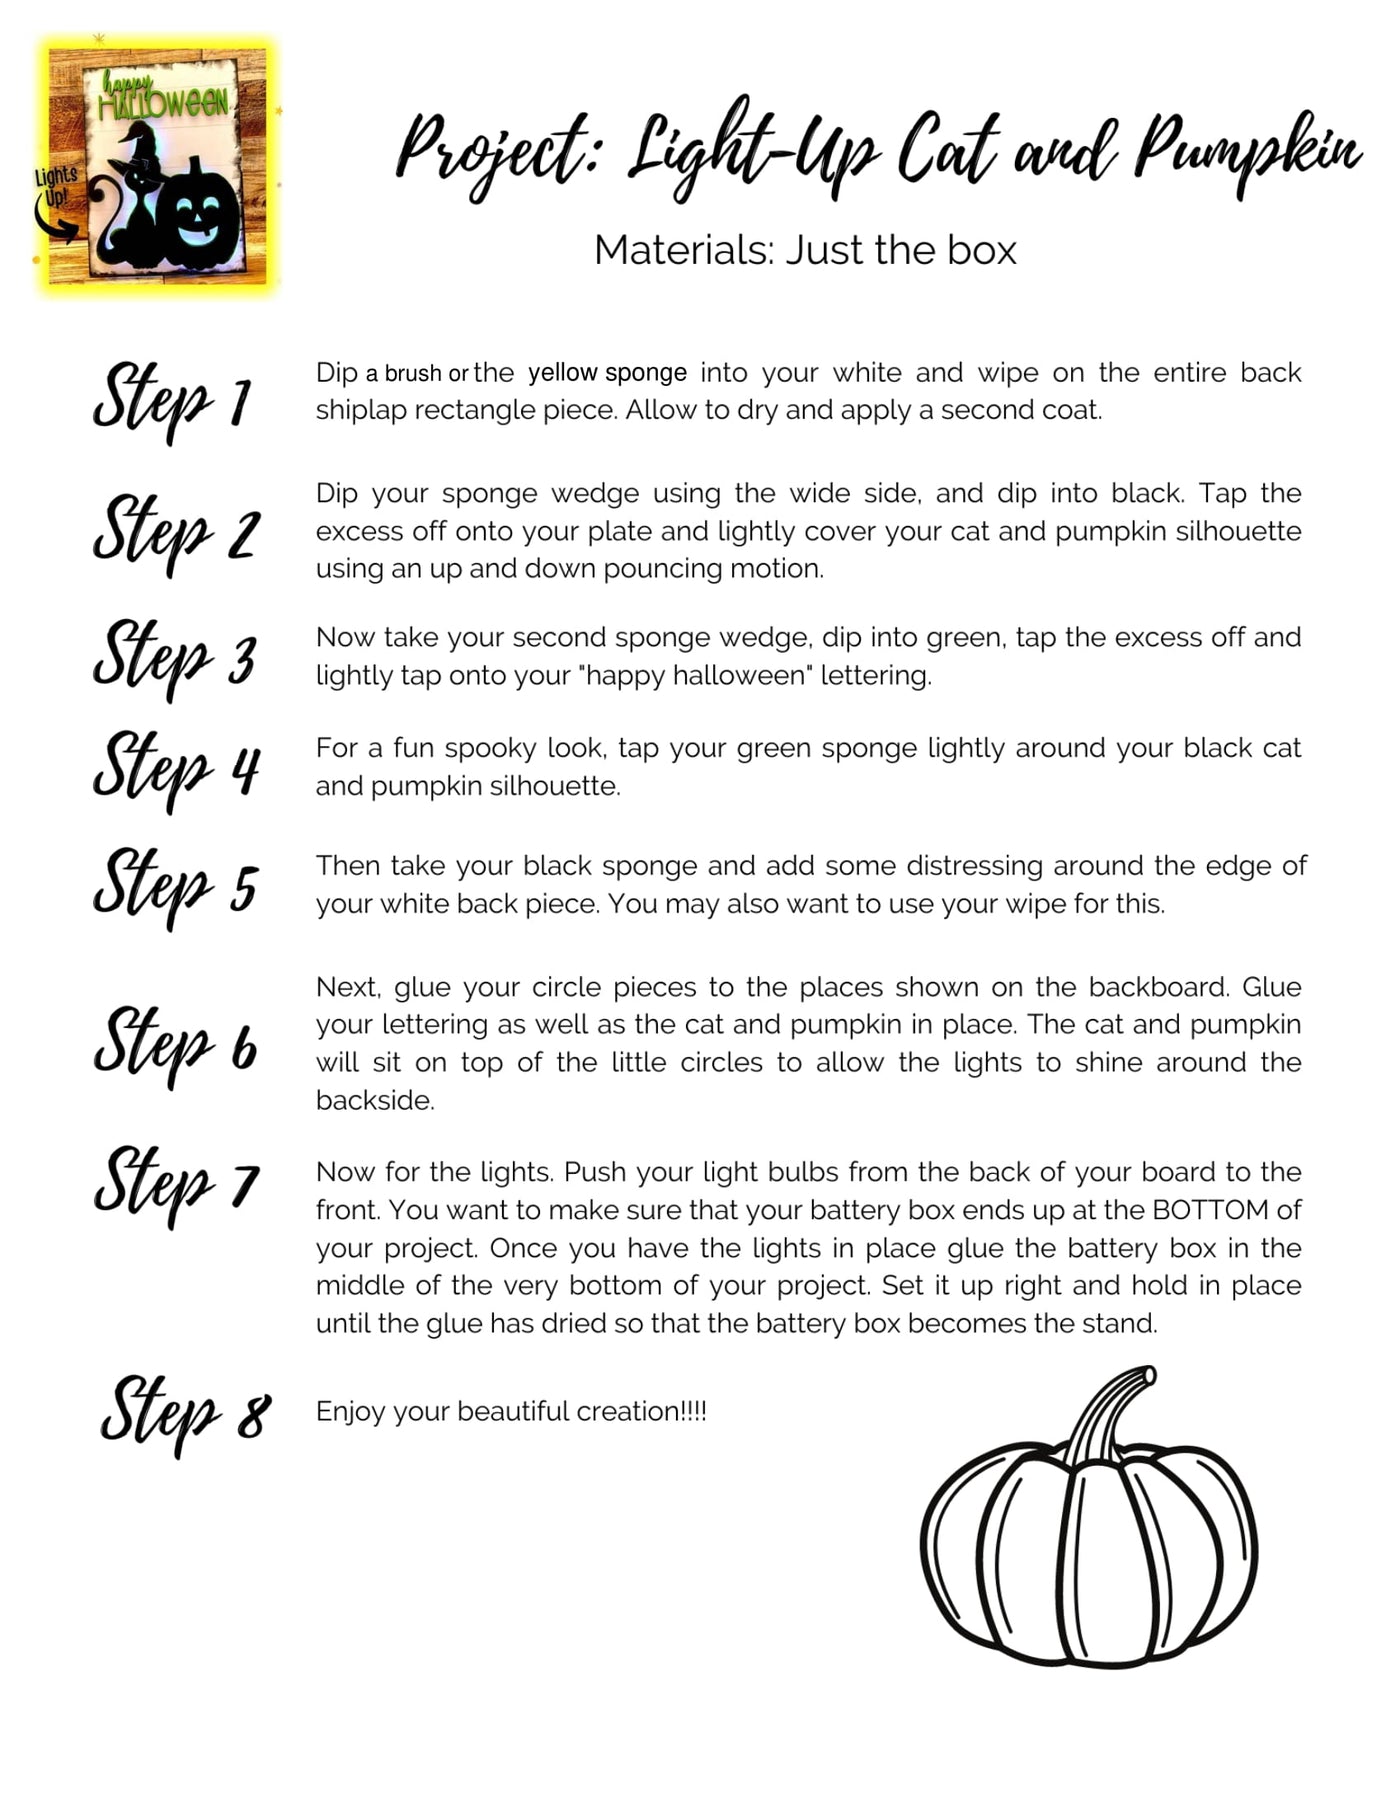 Light up cat and pumpkin instructions